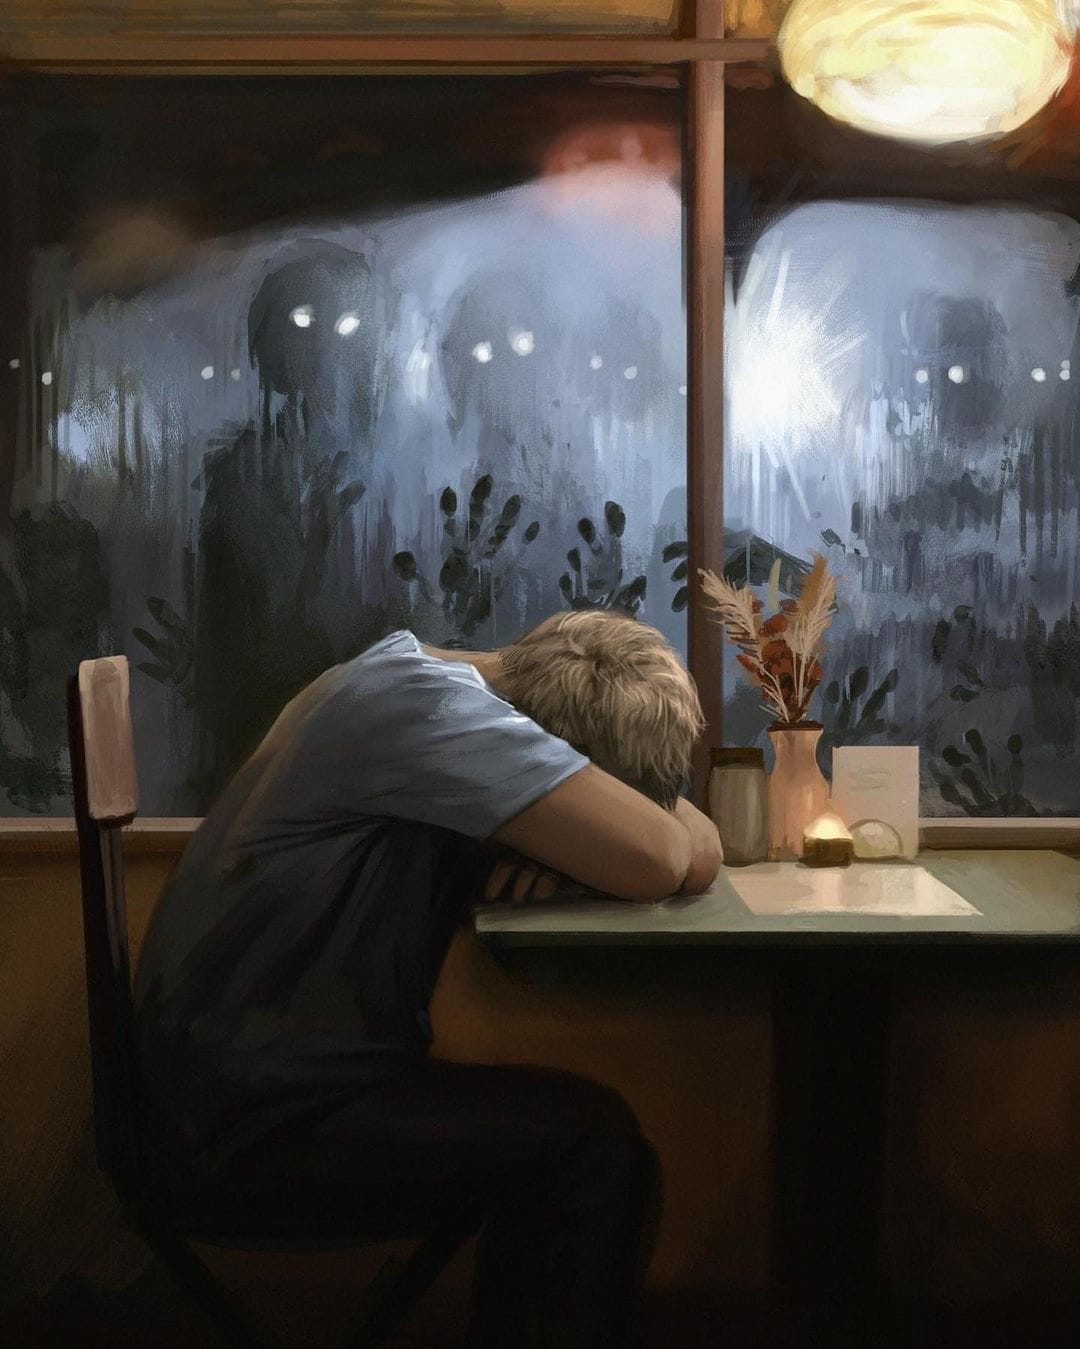 Un homme blond est affalé sur une table de restaurant la tête enfoui dans les bras. À la fenêtre, des dizaines de créatures ne laissant paraître que leurs yeux blancs regardent le jeune homme la main sur la vitre.